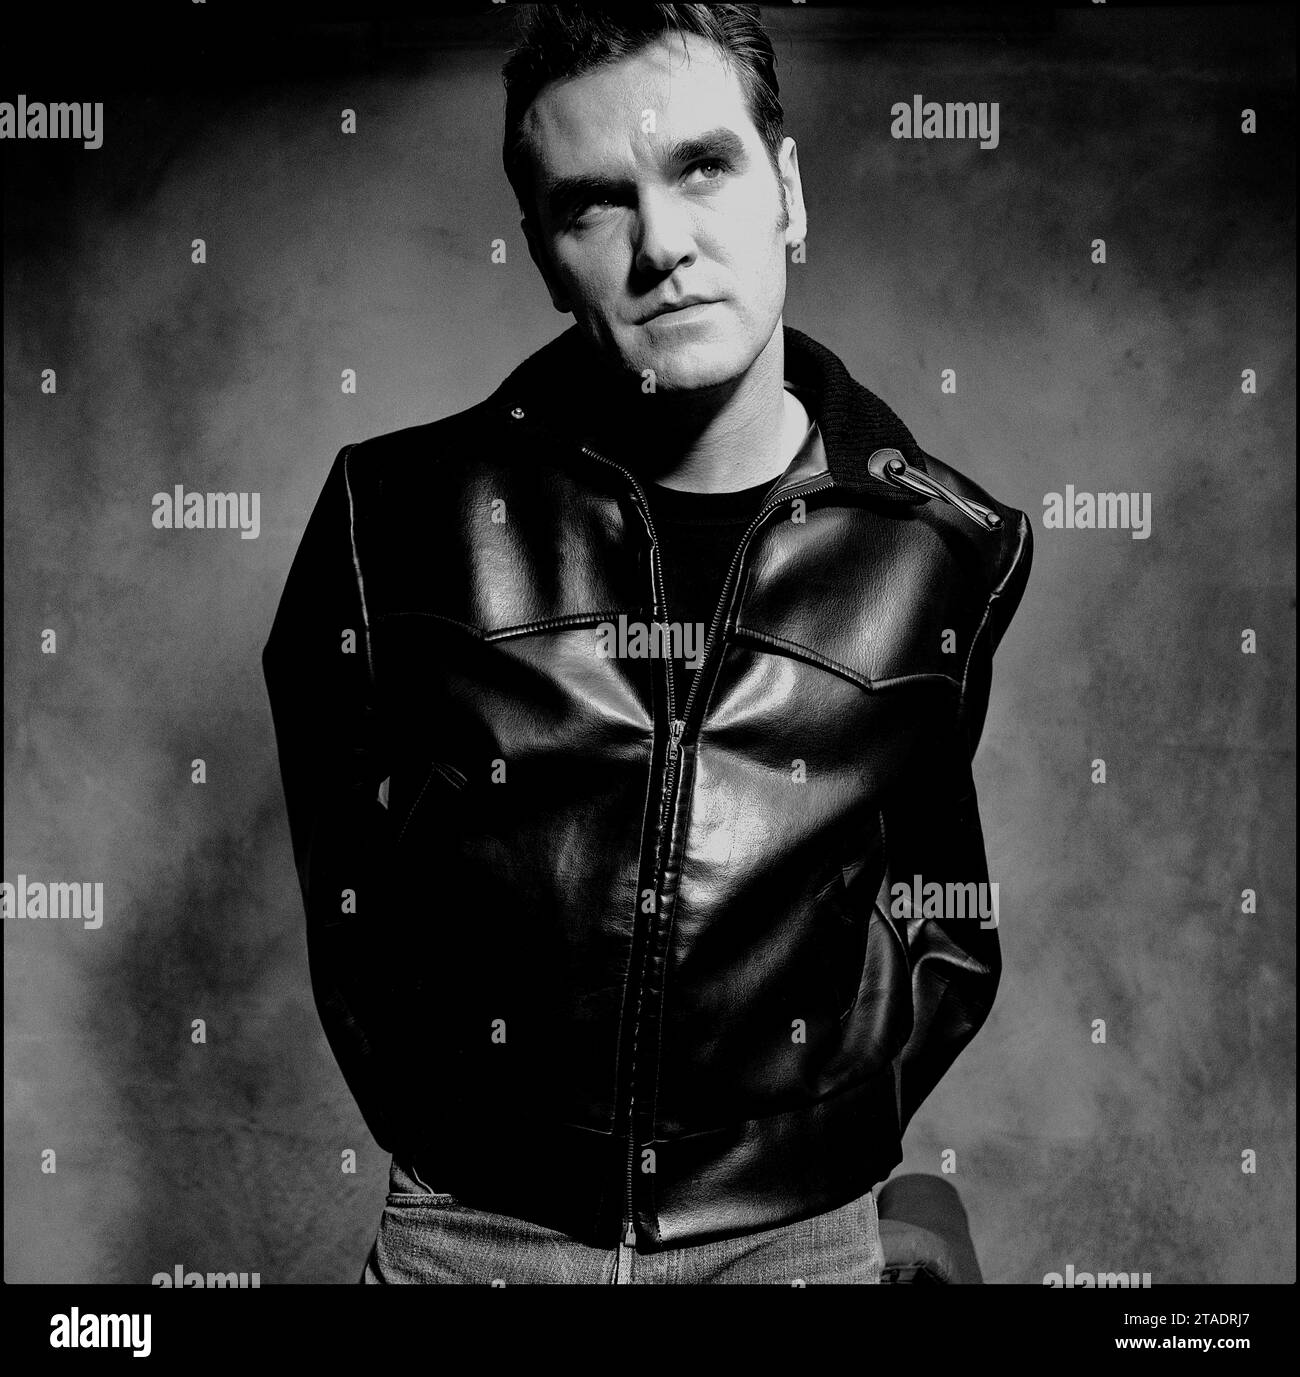 Potente ritratto a metà foto in bianco e nero della leggendaria rockstar, cantautore Morrissey in giacca di pelle e jeans blu per promuovere il suo singolo "Sunny" nel 1995 per Parlophone Records. Foto Stock